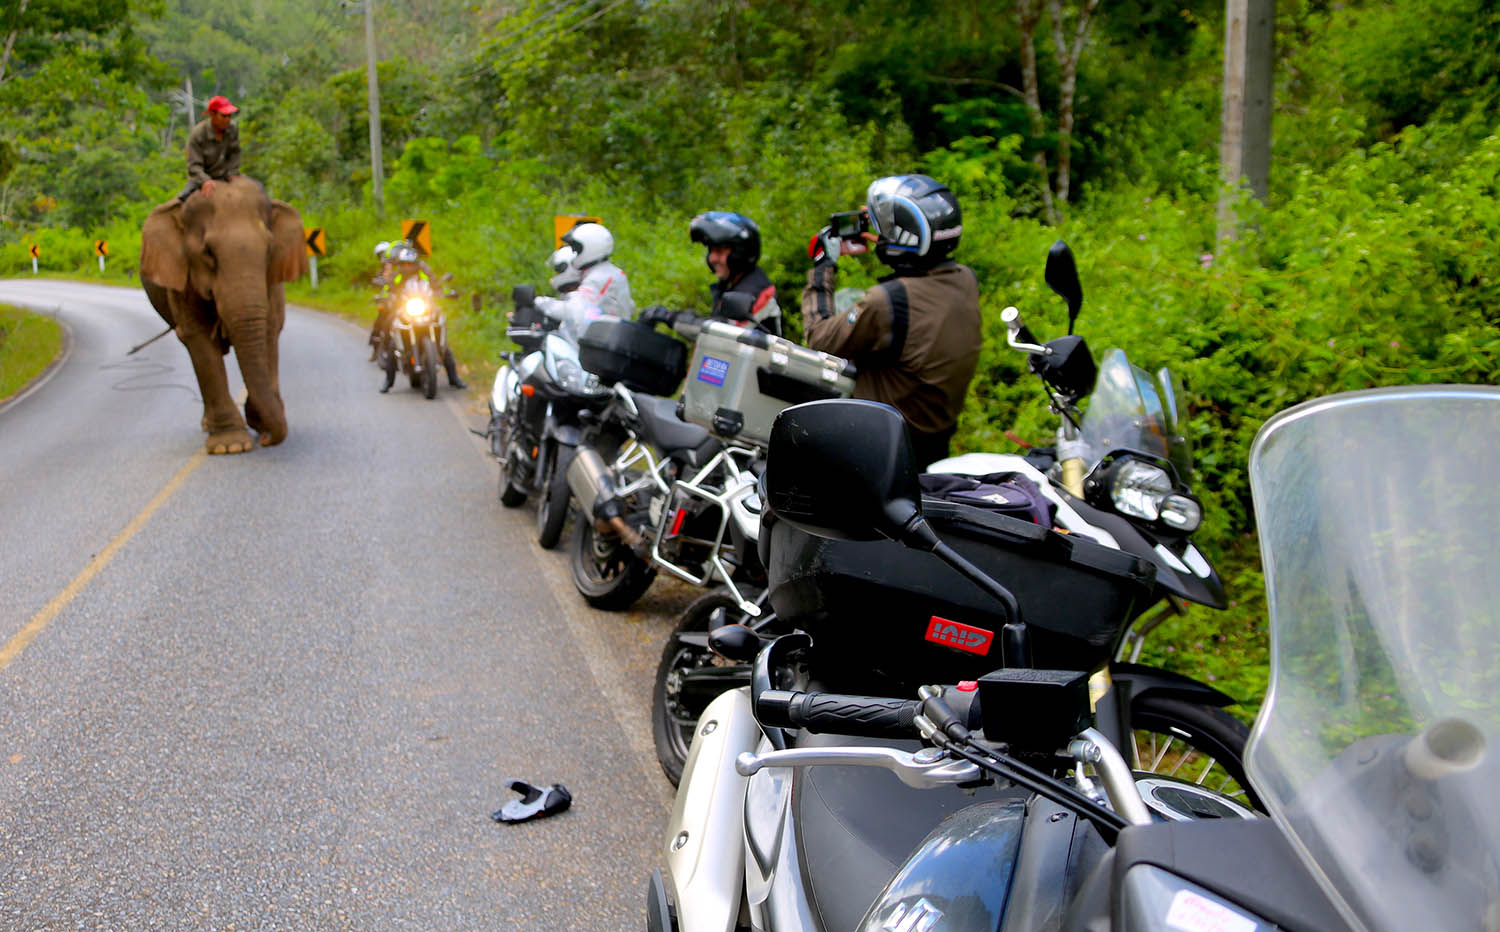 Tráfico motos con elefante